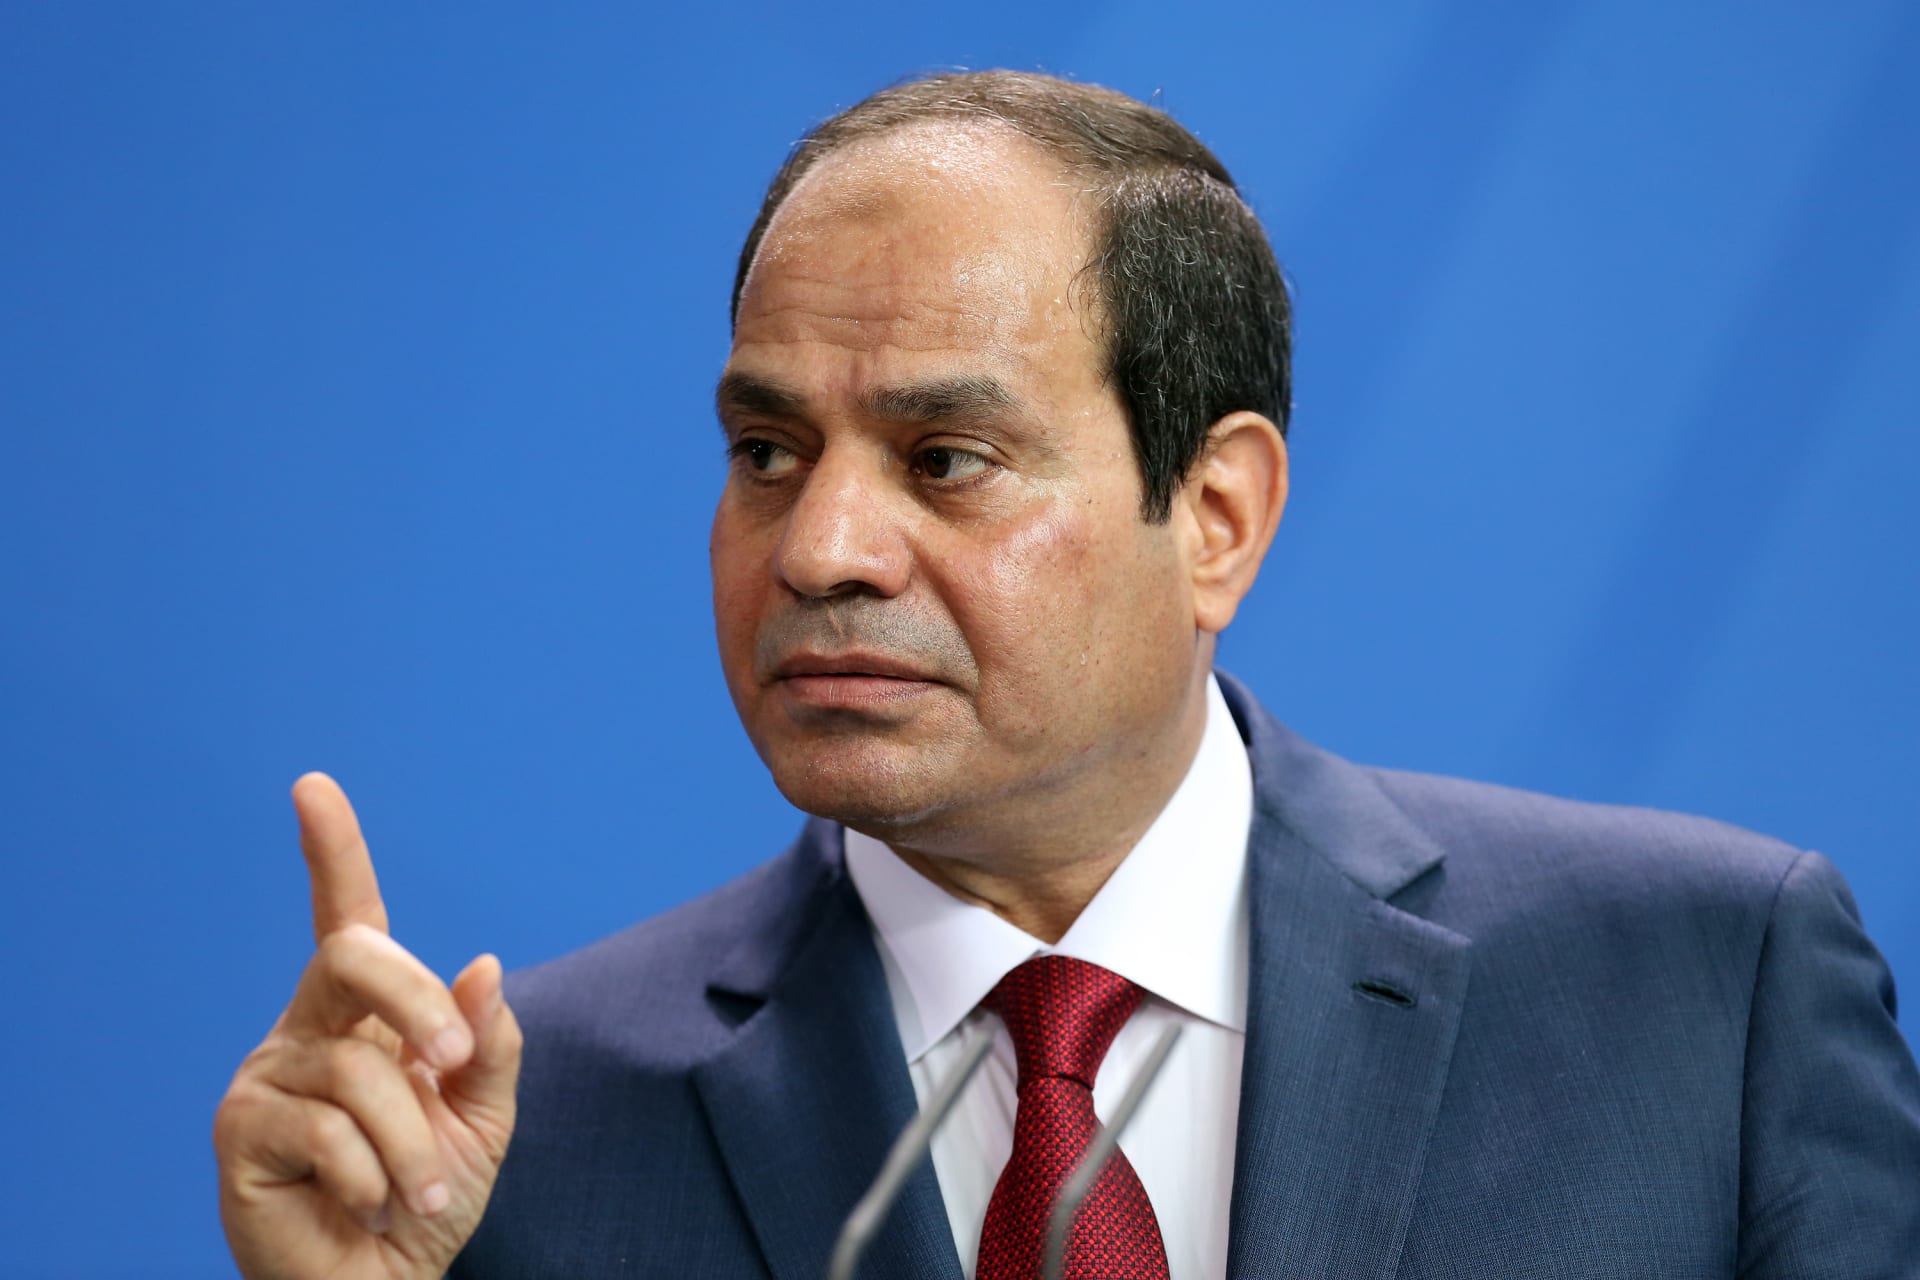 العفو الدولية تحذر الاتحاد الأوروبي من تسليح مصر: مخاطرة بالتواطؤ في القتل والاختفاء القسري والتعذيب والتجسس